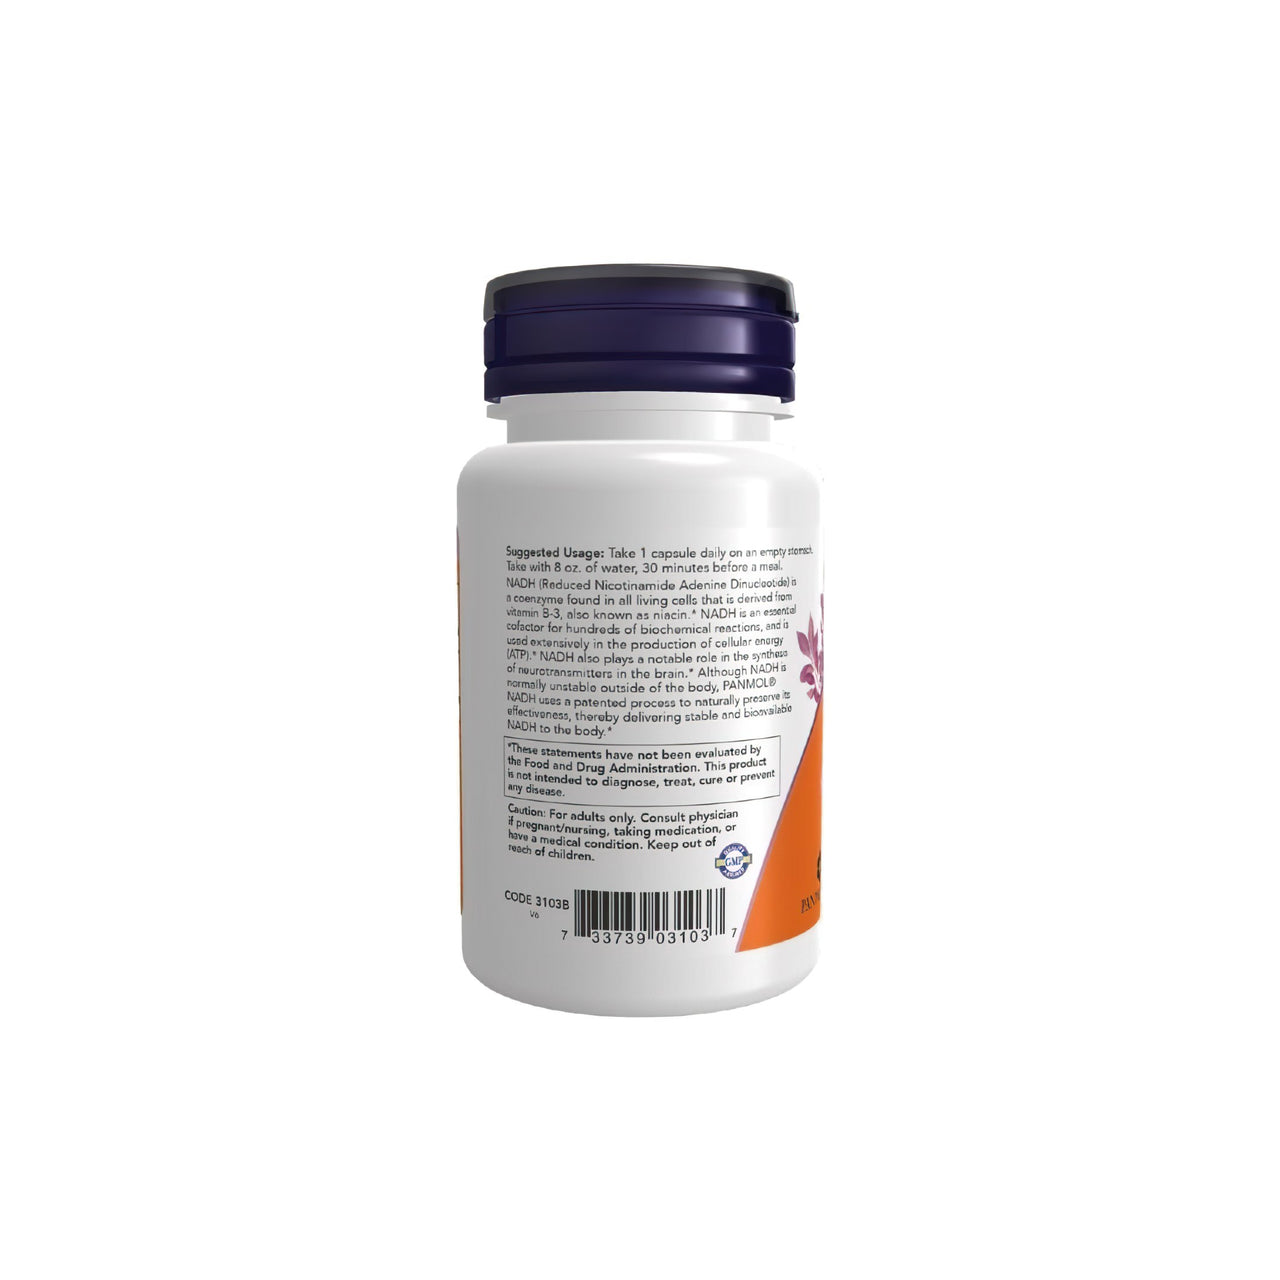 Un flacone di Now Foods NADH 10 mg 60 Capsule Vegetali, noto per i suoi benefici sul sistema immunitario, su uno sfondo bianco.